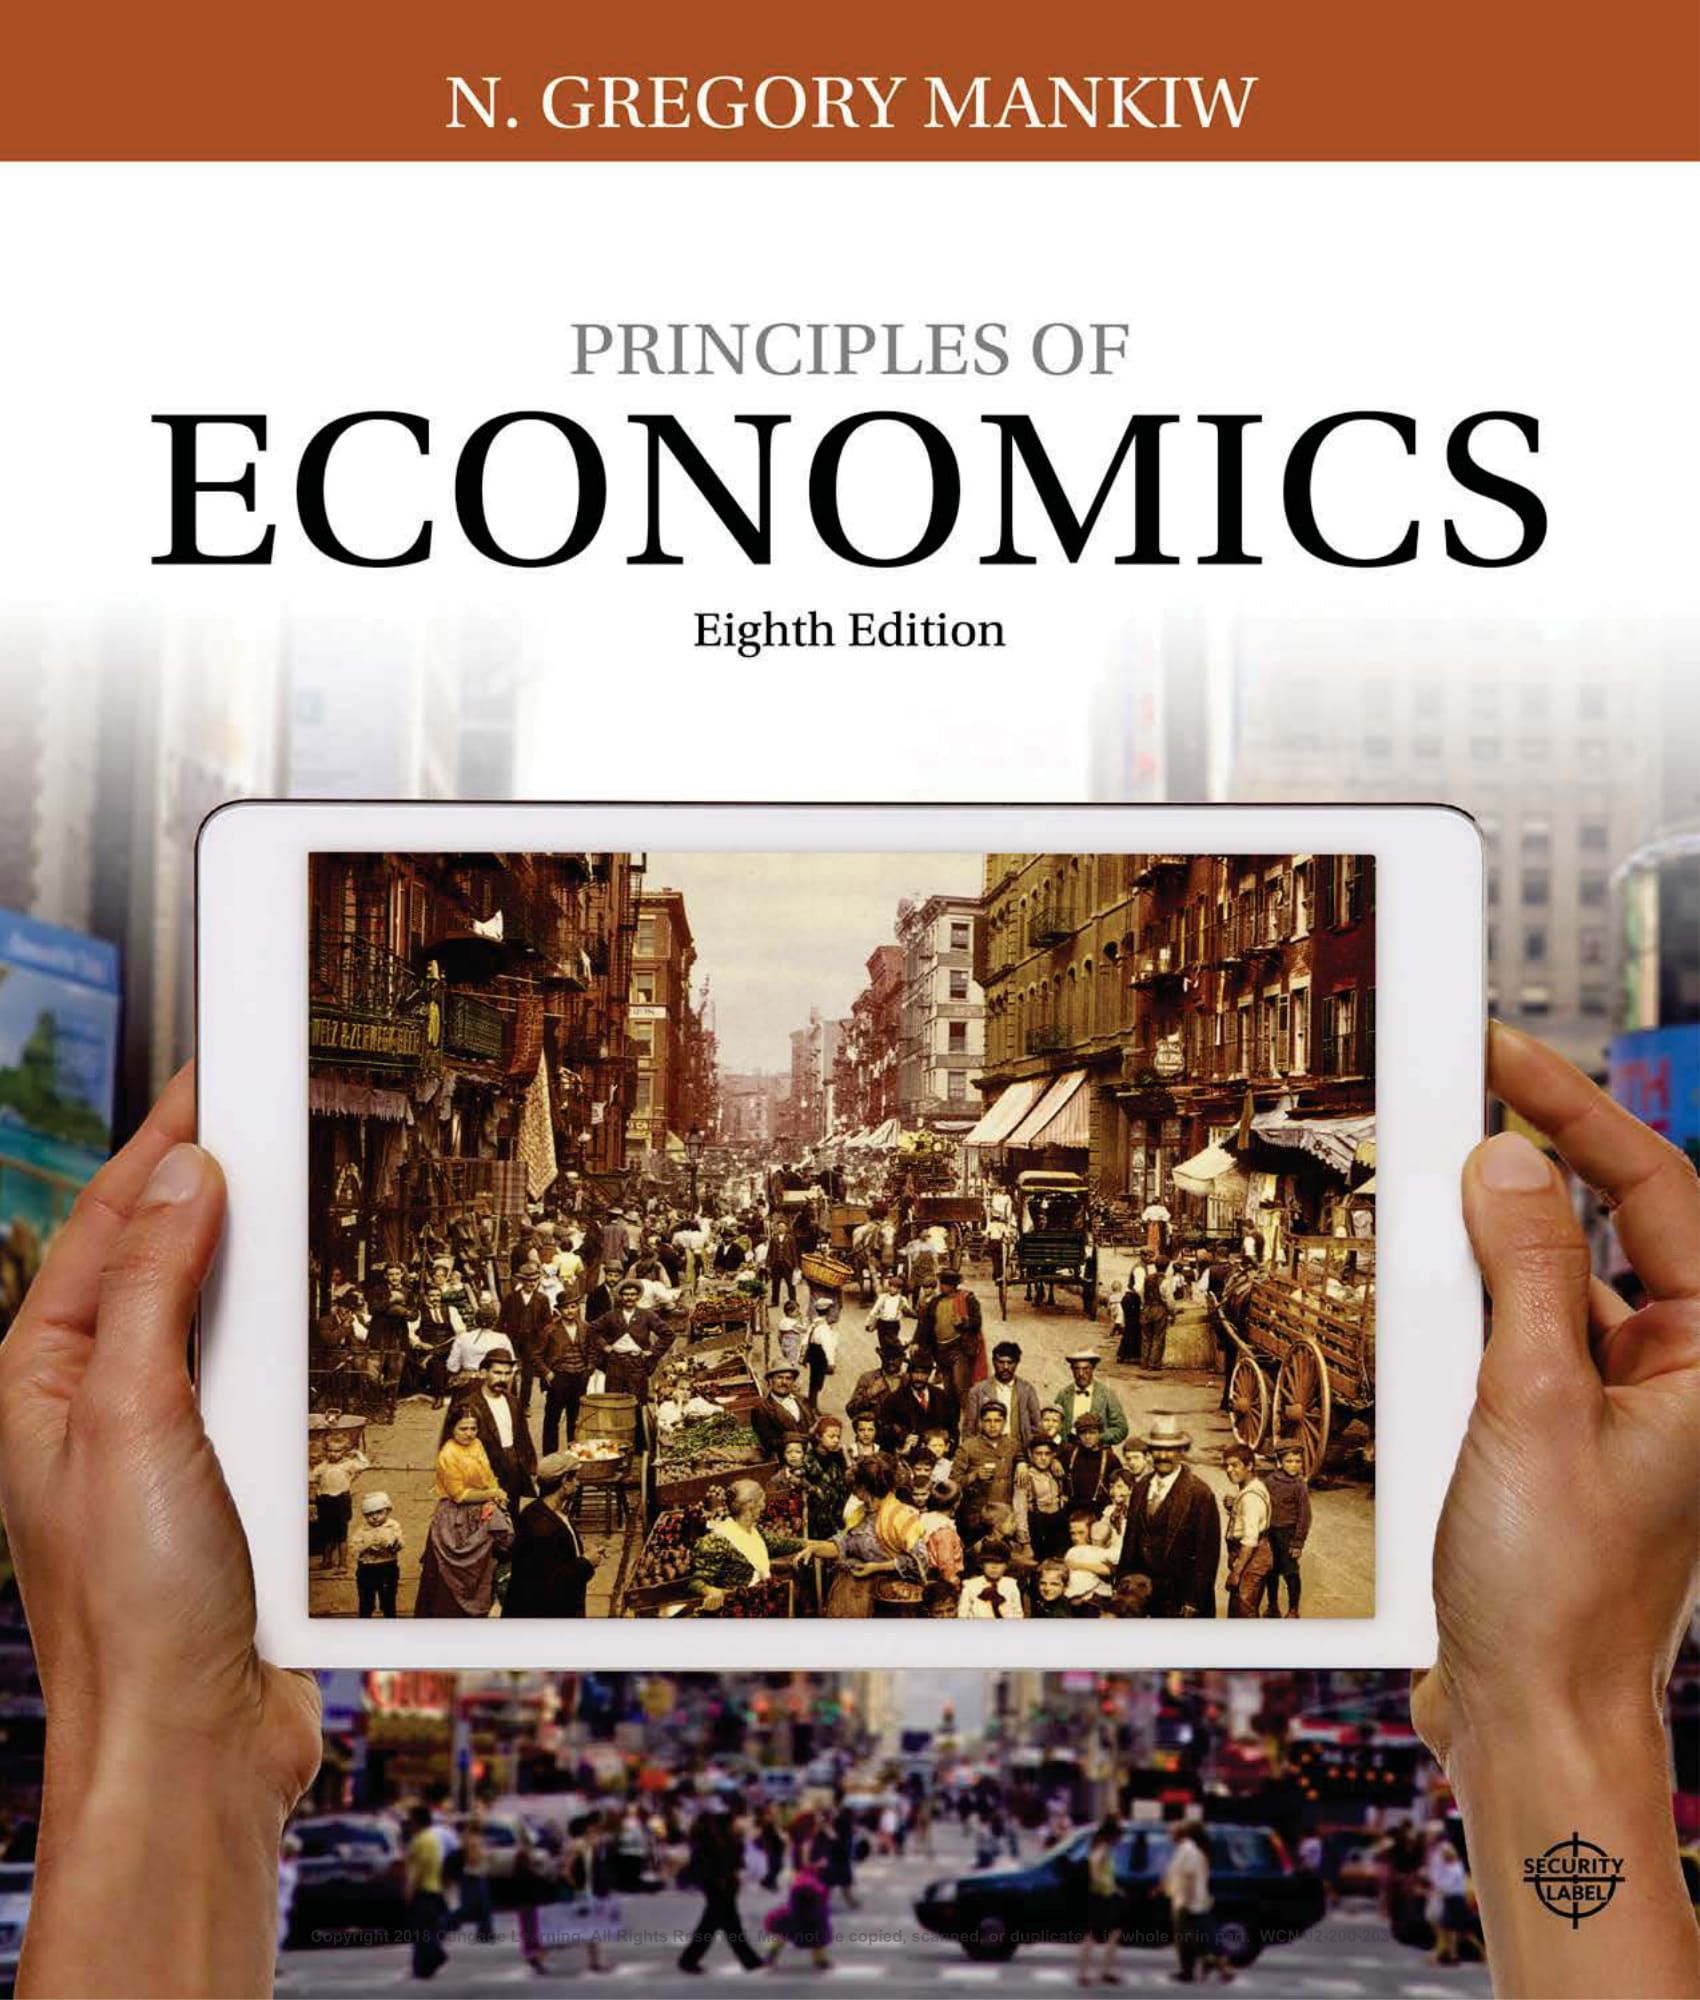 principles of economics assignment 1